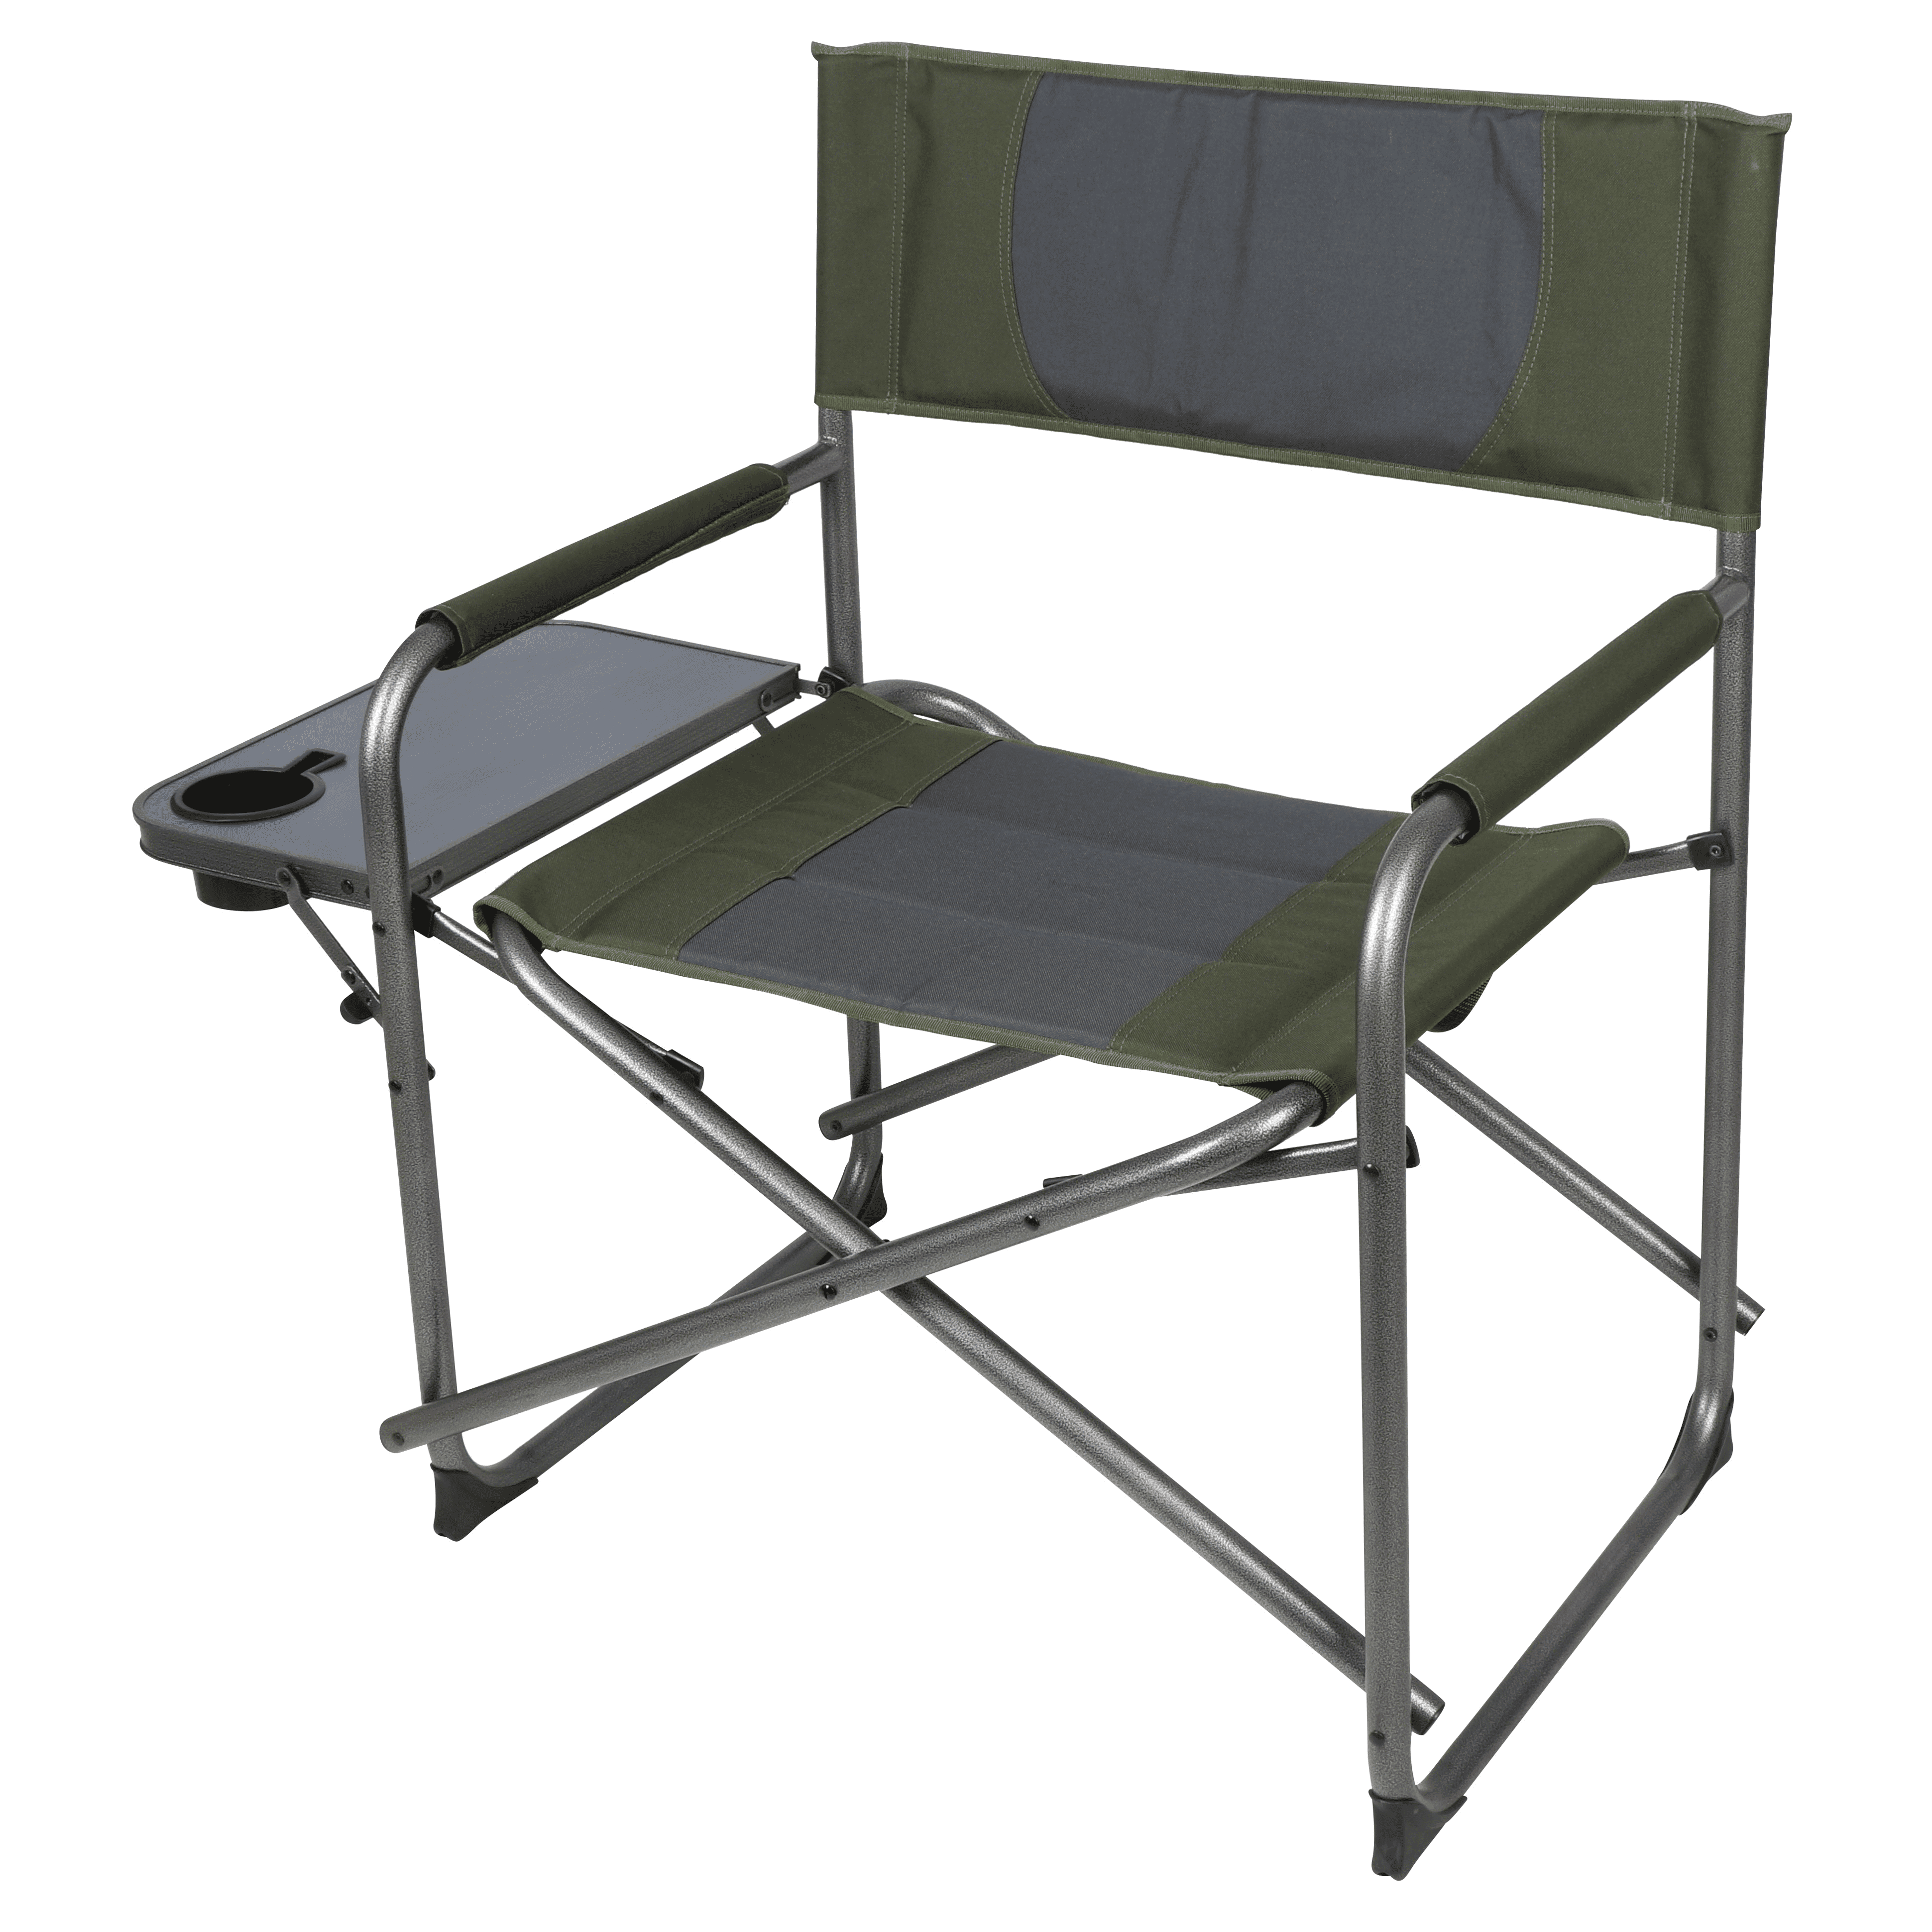 Ozark Trail Directors Camping Chair Foldout Side Table Black Heavy Duty Backyard 